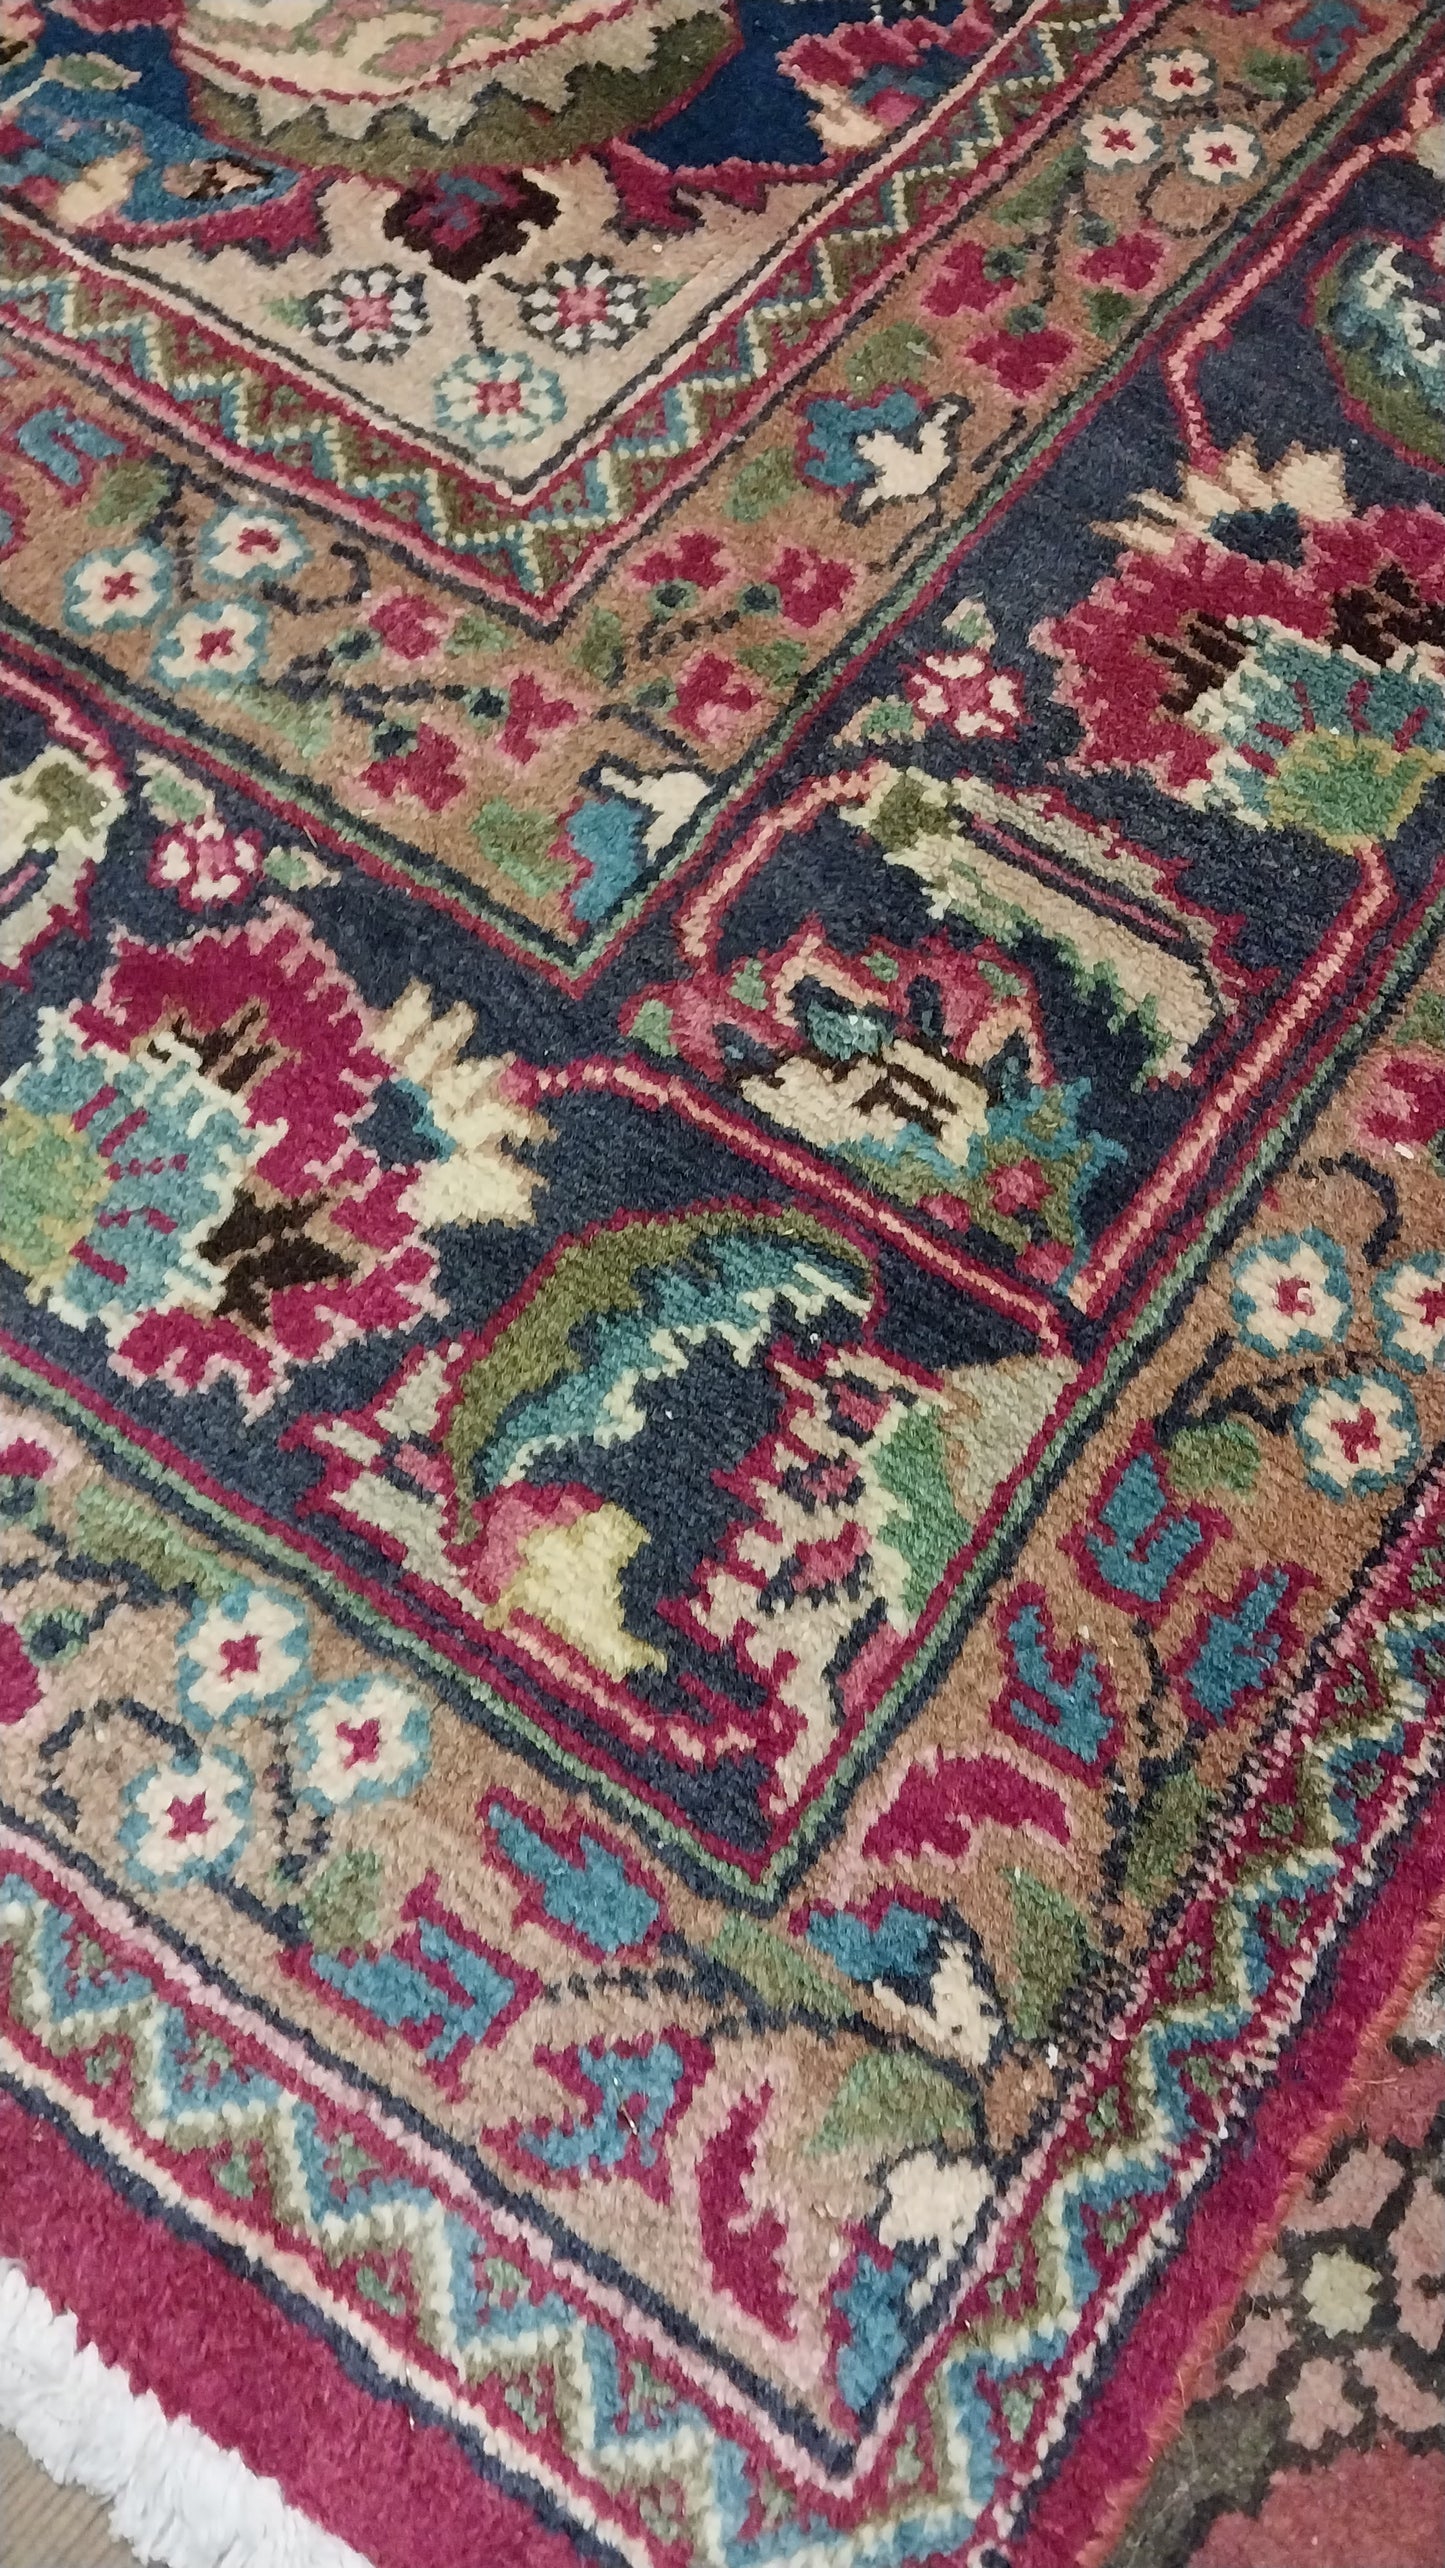 Persian carpet (305cm x 200cm)